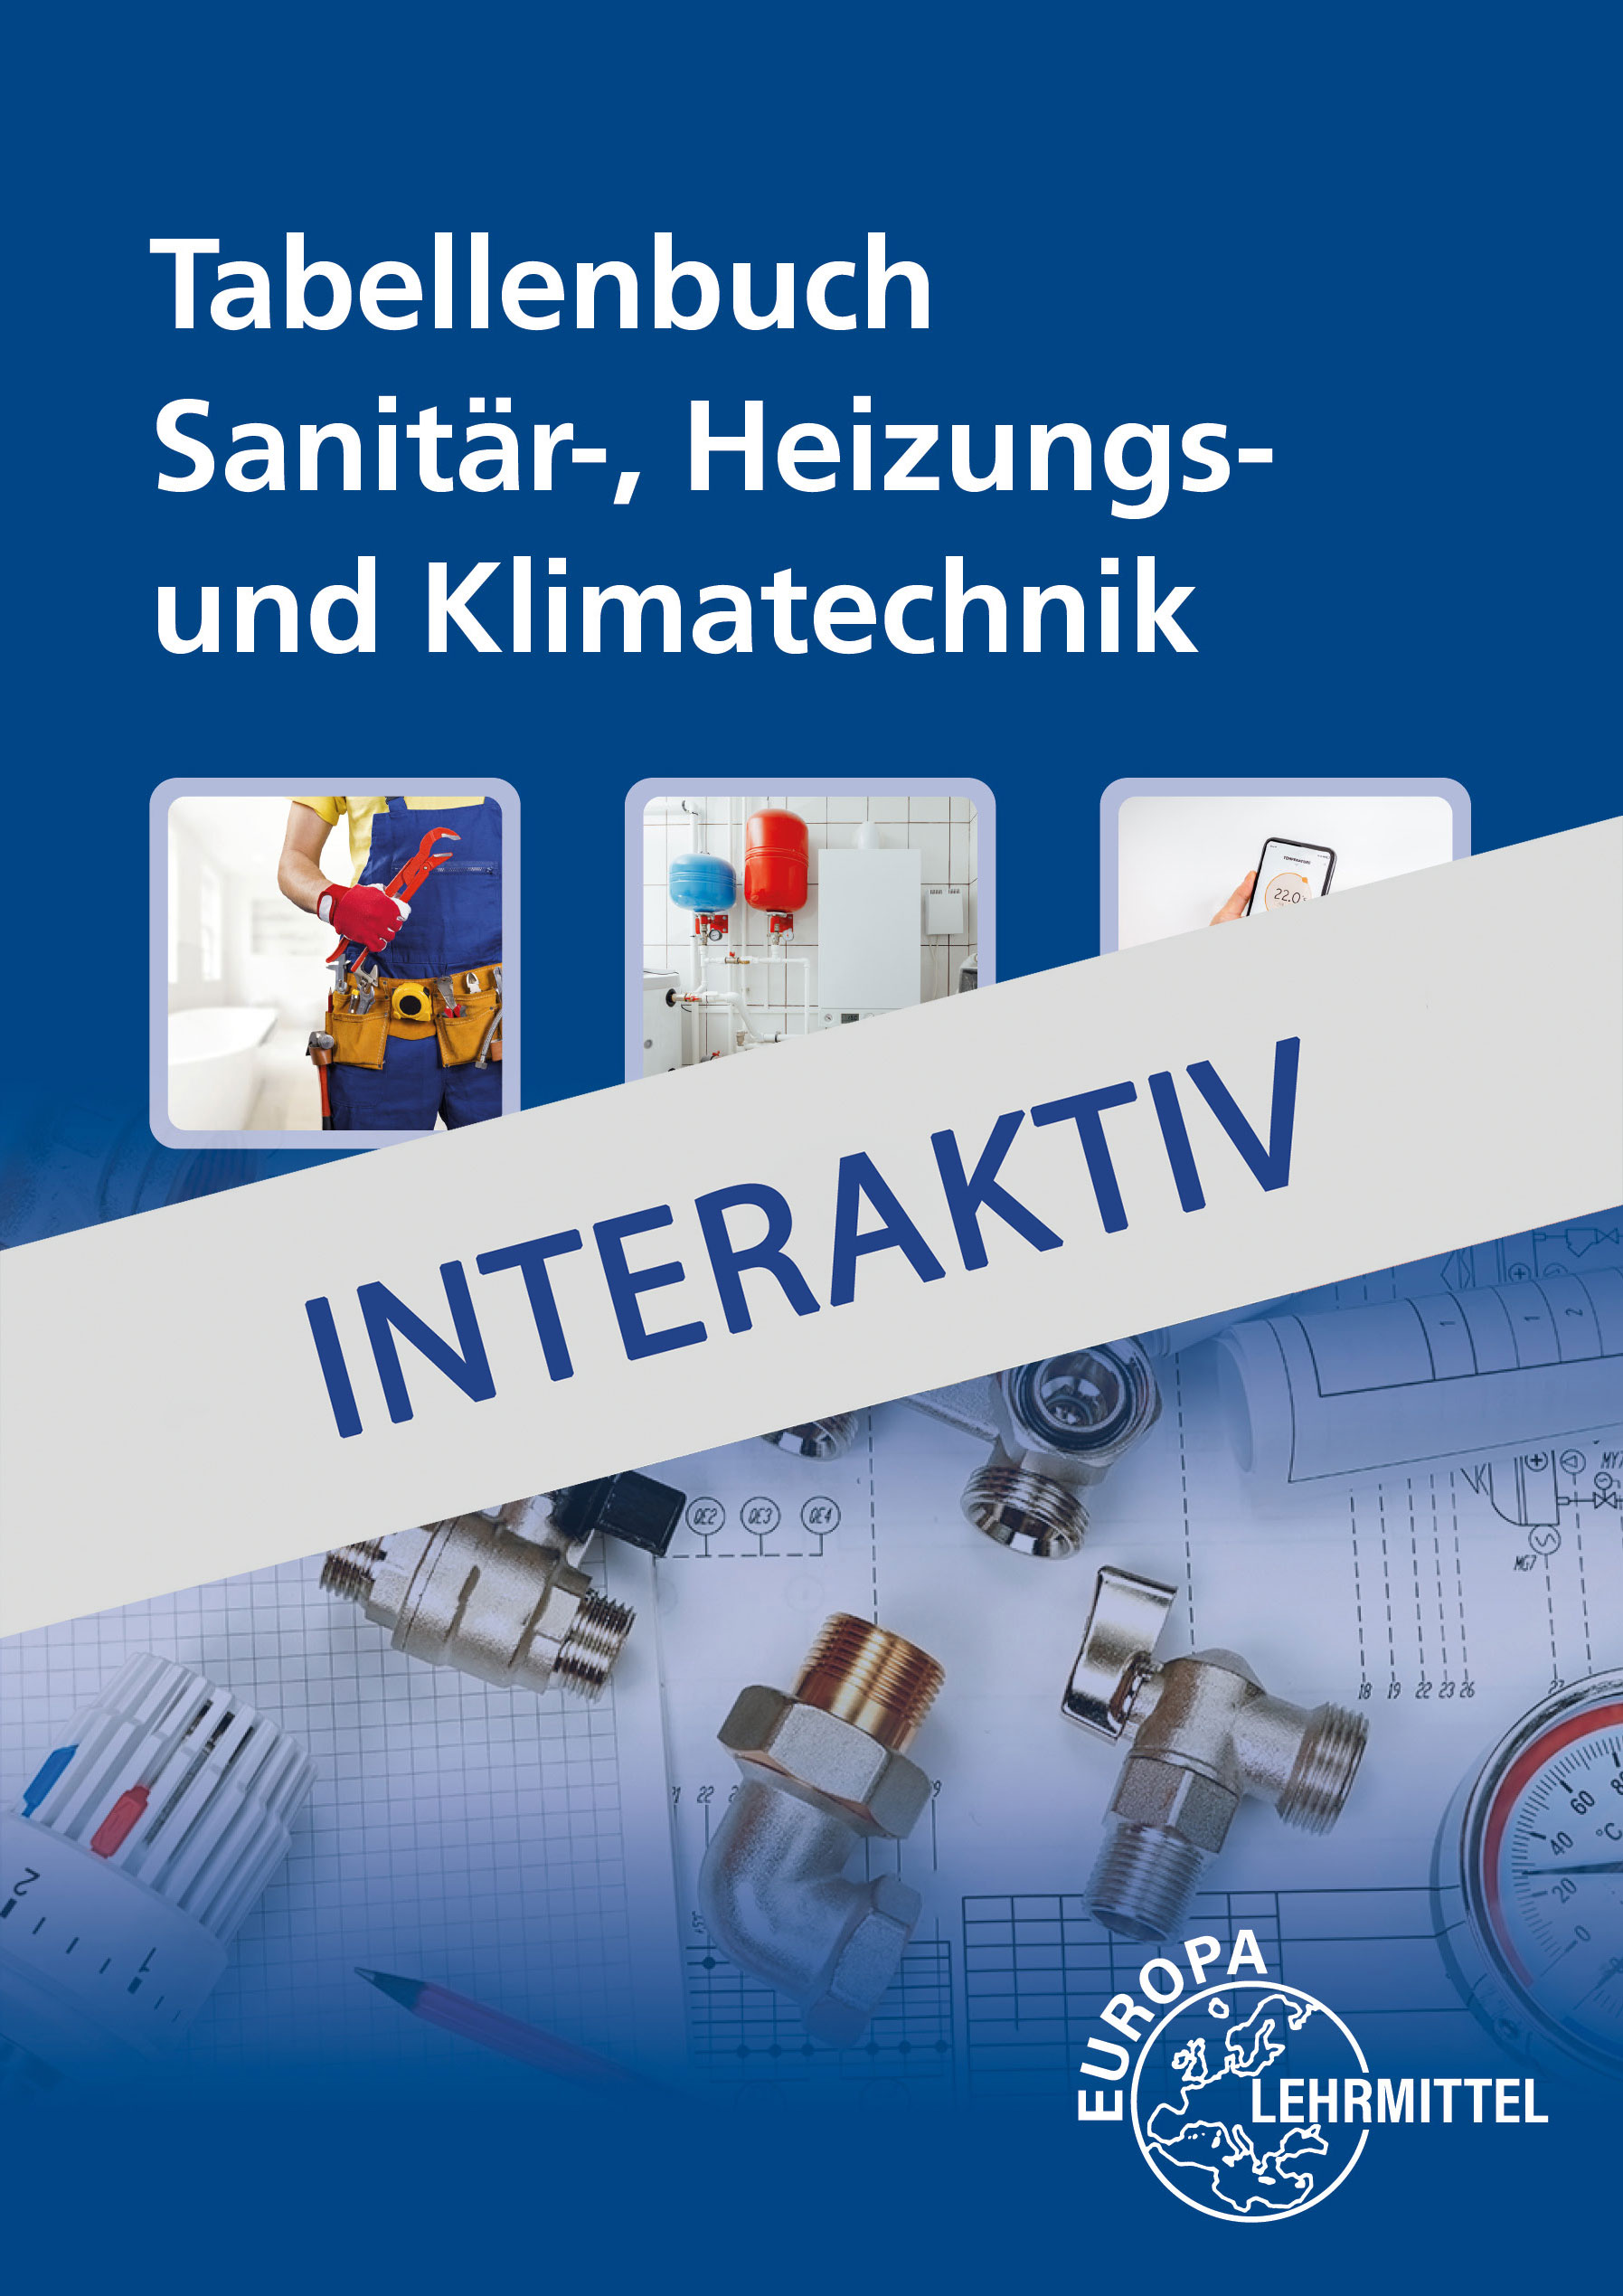 Tabellenbuch Sanitär-, Heizungs- und Klimatechnik interaktiv